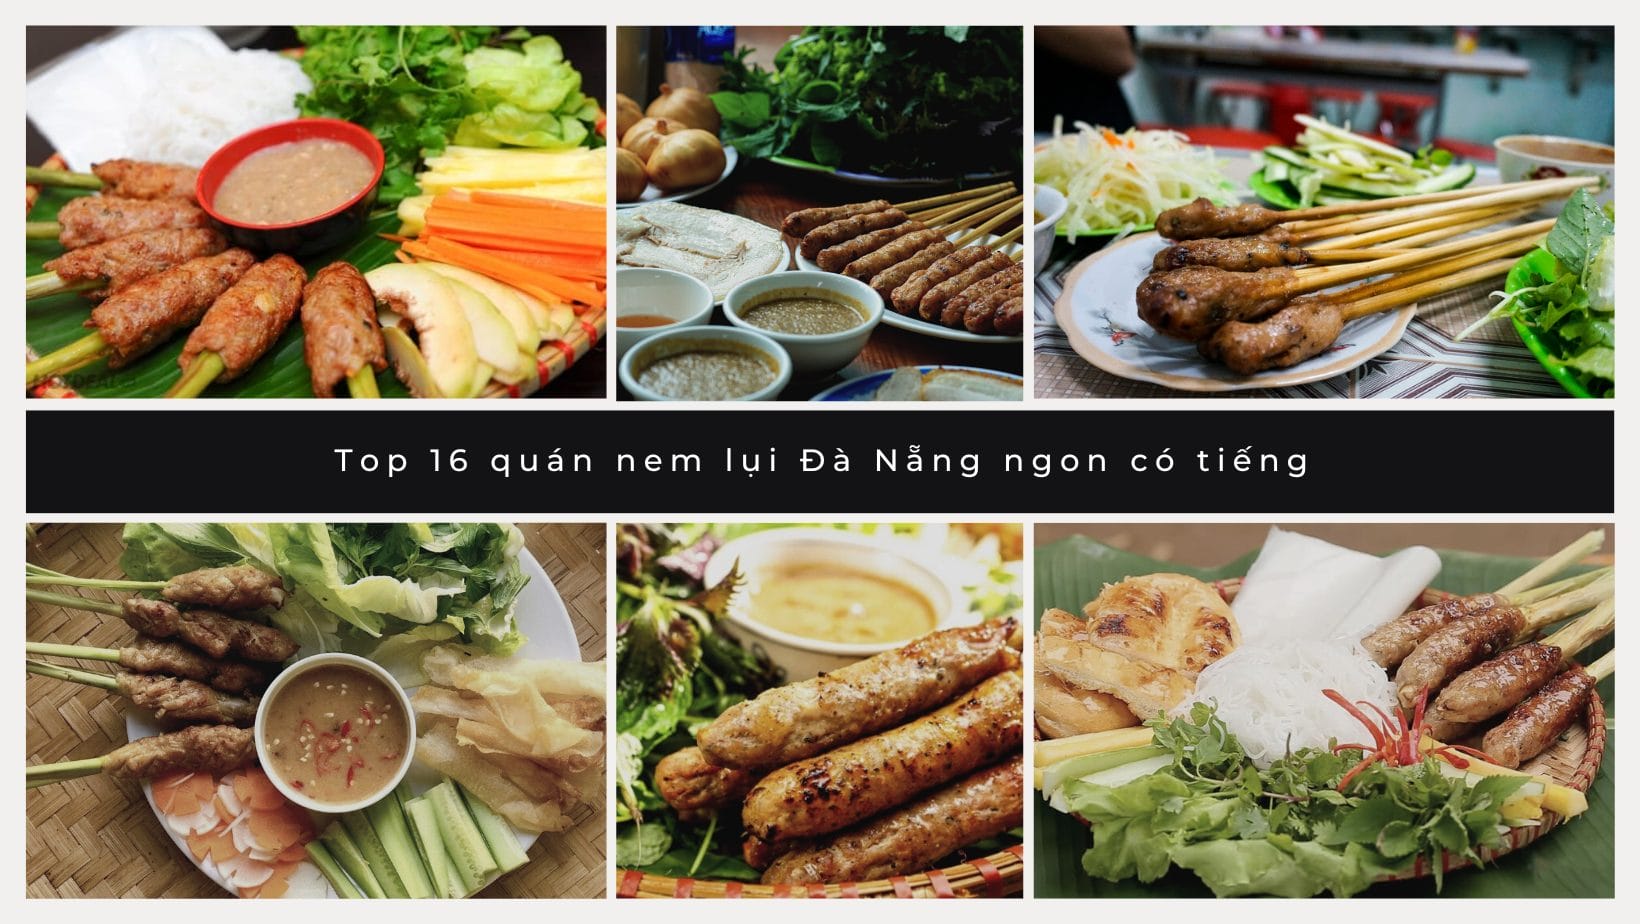 Top 10 quán Chè xoa xoa hạt lựu Đà Nẵng ngon nổi tiếng